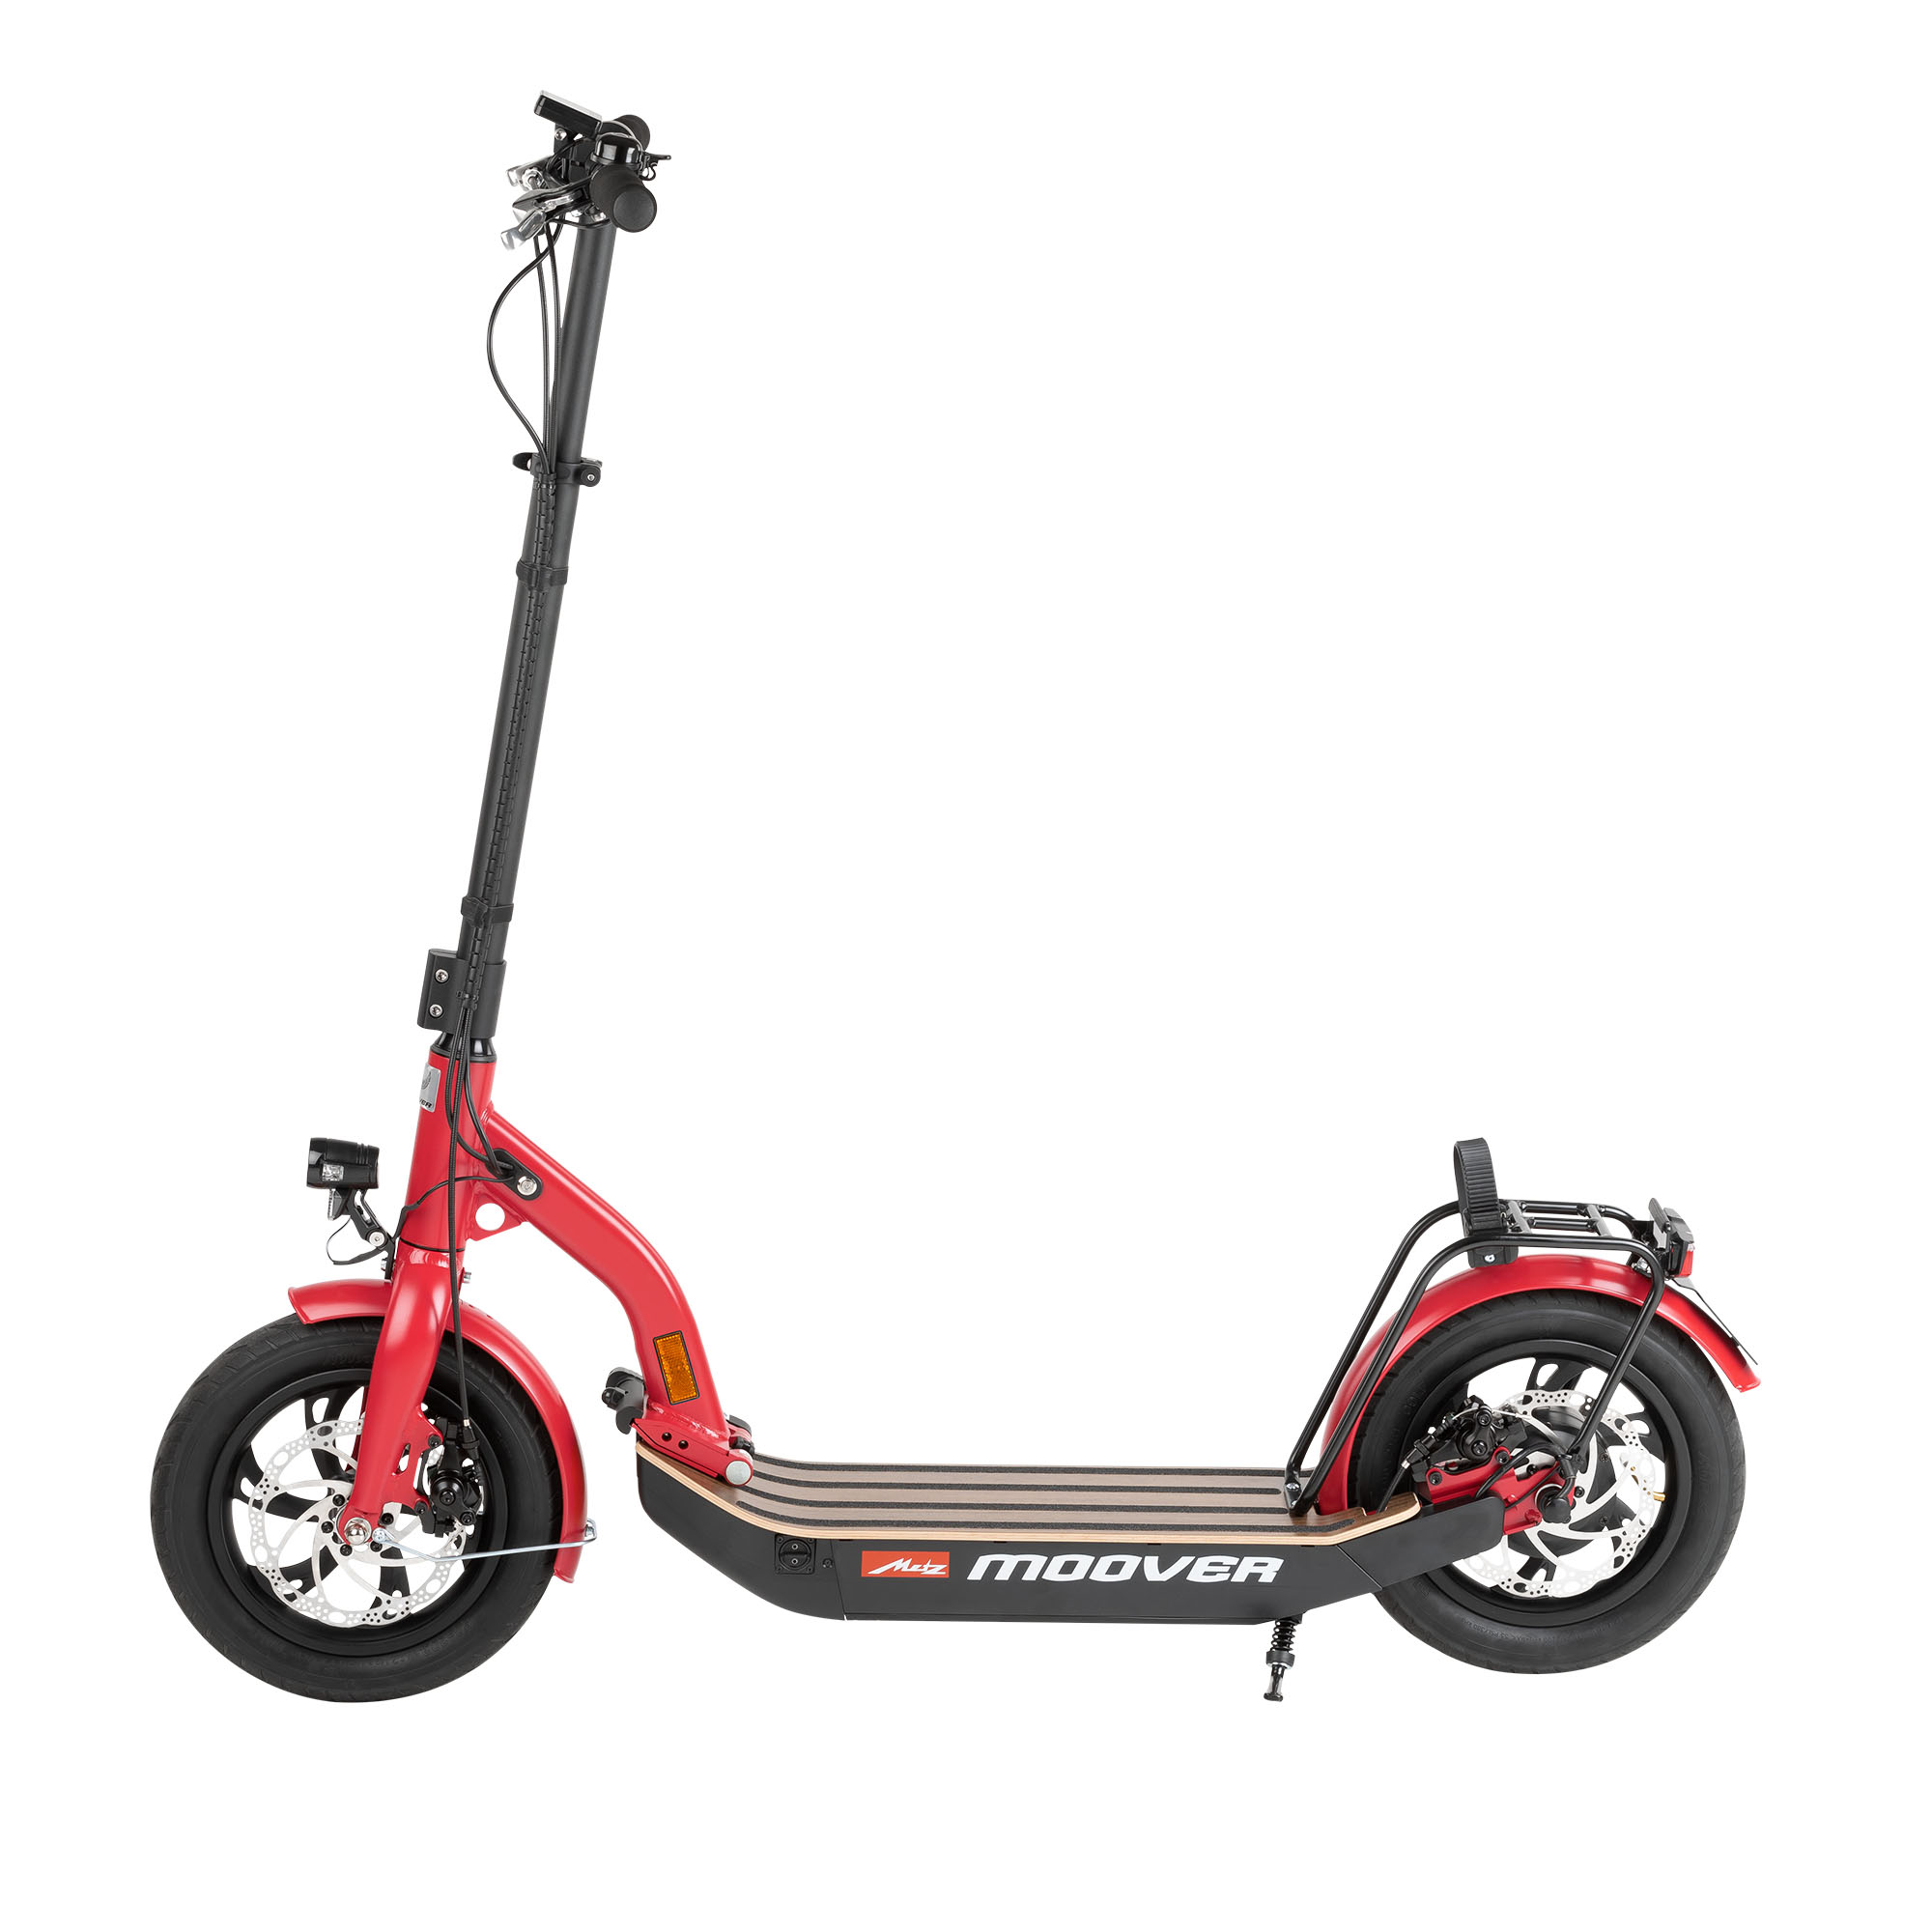 Elektro Scooter mit Straßenzulassung - Was zu beachten ist!